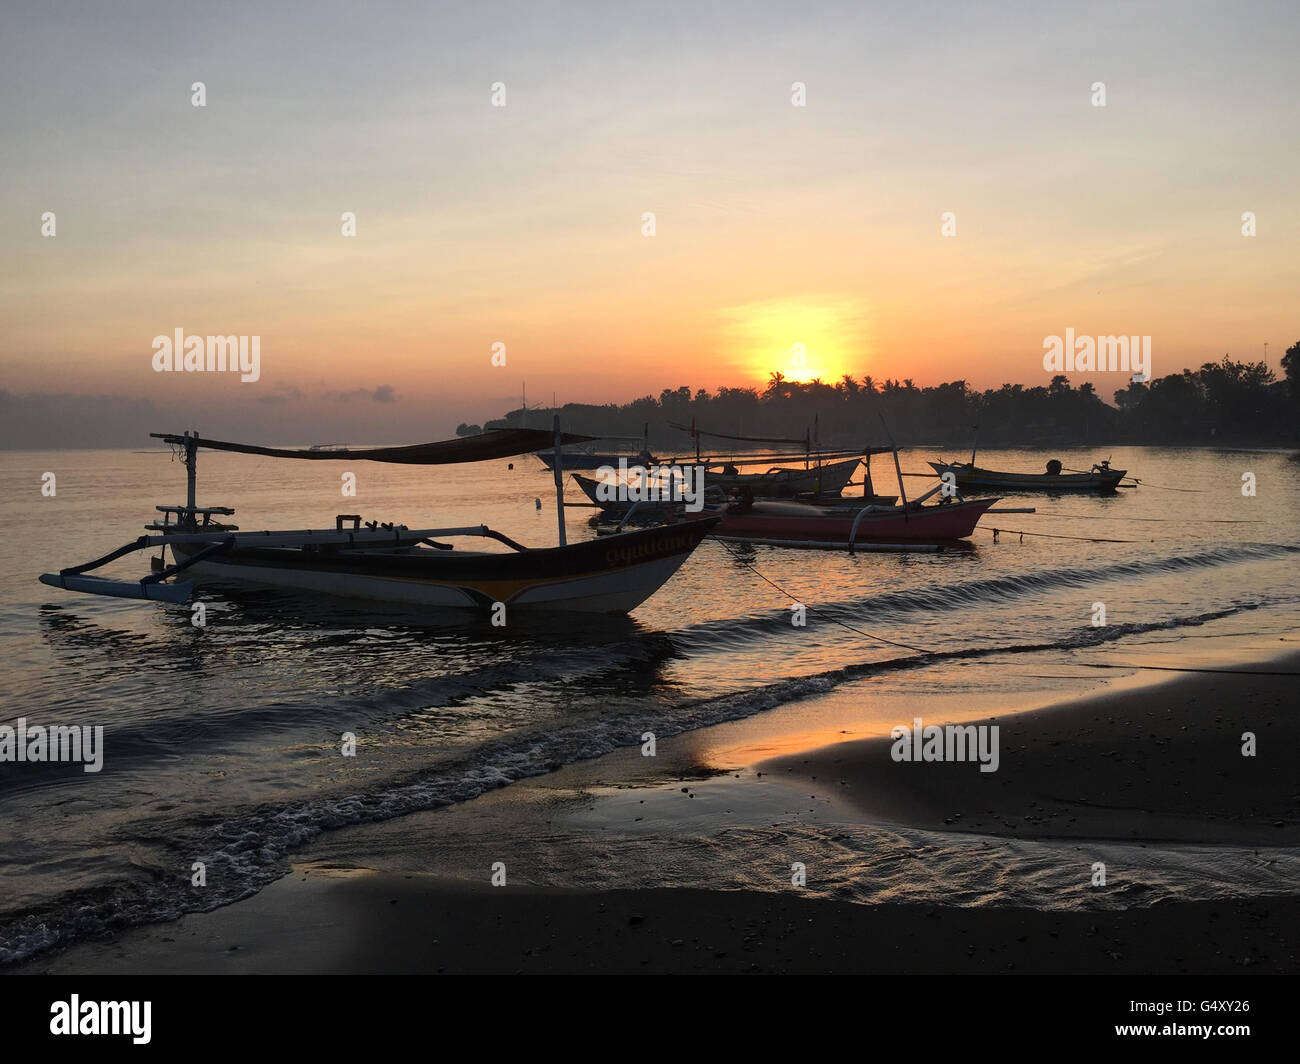 L'INDONÉSIE, Bali, à Buleleng, bateaux de pêche sur le lac de Bali au lever du soleil Banque D'Images